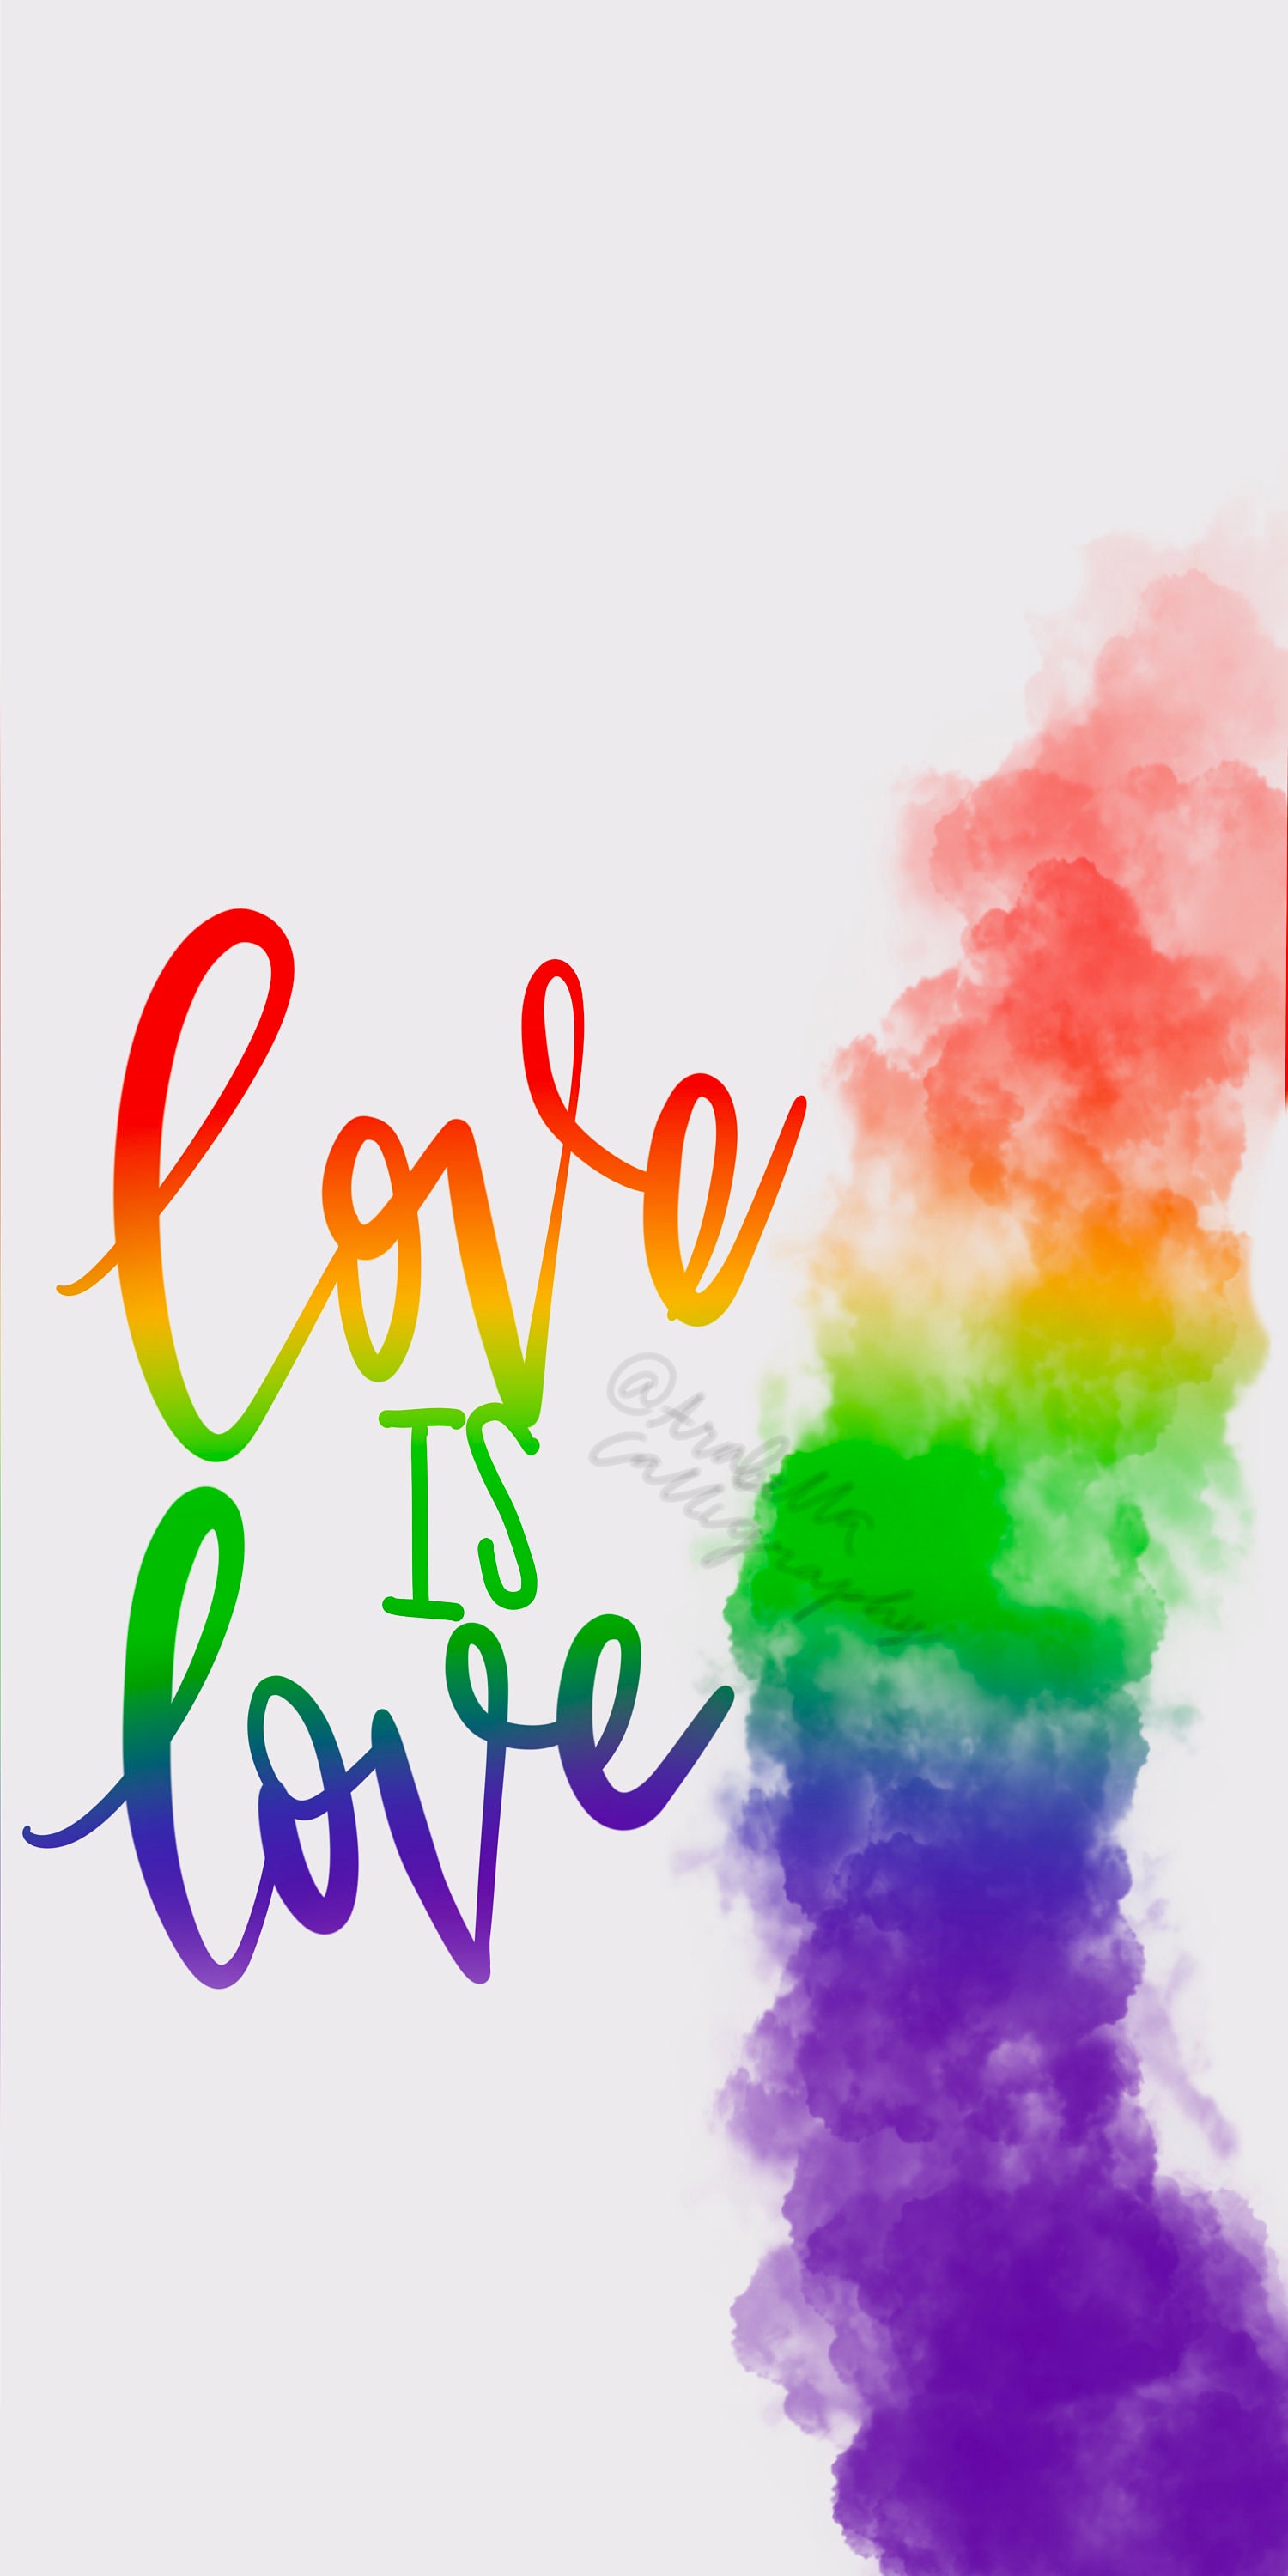 Love is Love Gay Pride iPhone Wallpaper